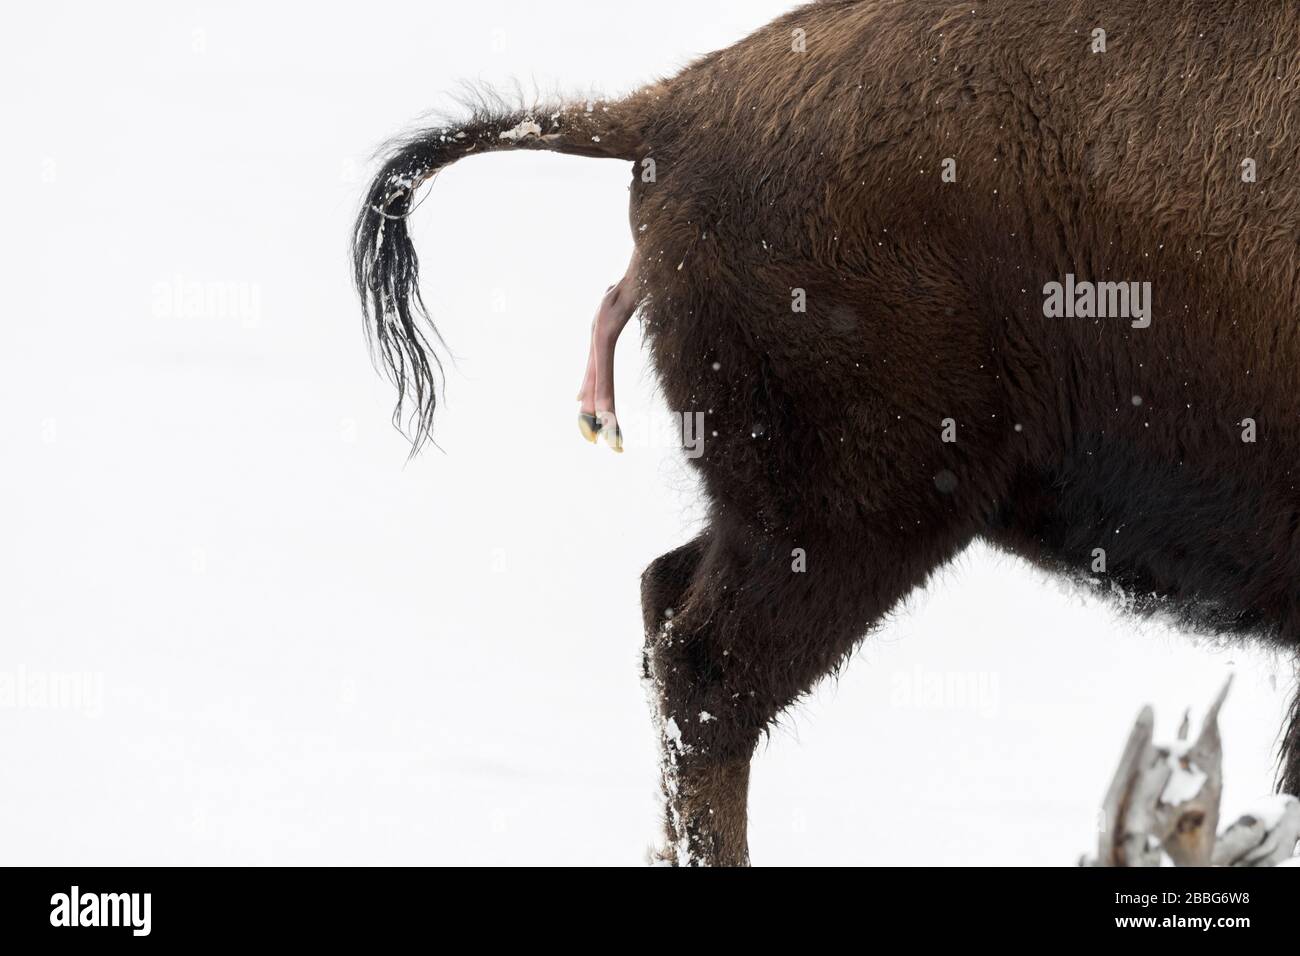 Bison d'Amérique / Amerikanischer ( Bison bison bison ) donne naissance à un veau en hiver, dans la neige de naissance avortée, close-up, Février, Yellowstone NP, Wyo Banque D'Images